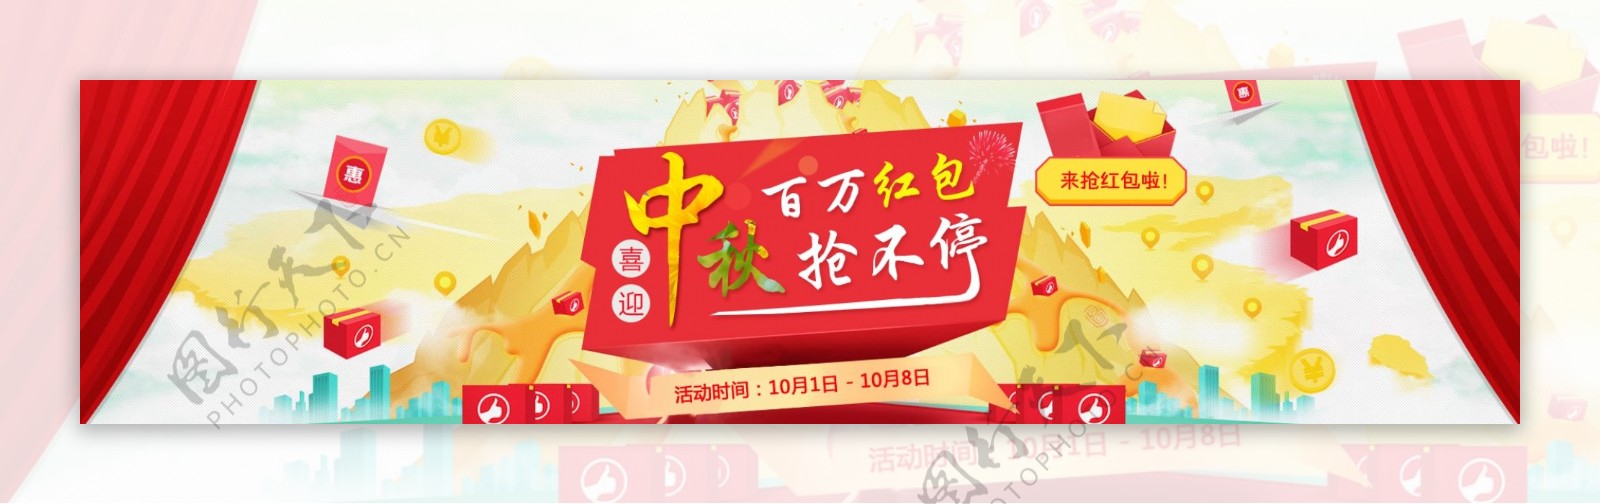 中秋红包banner